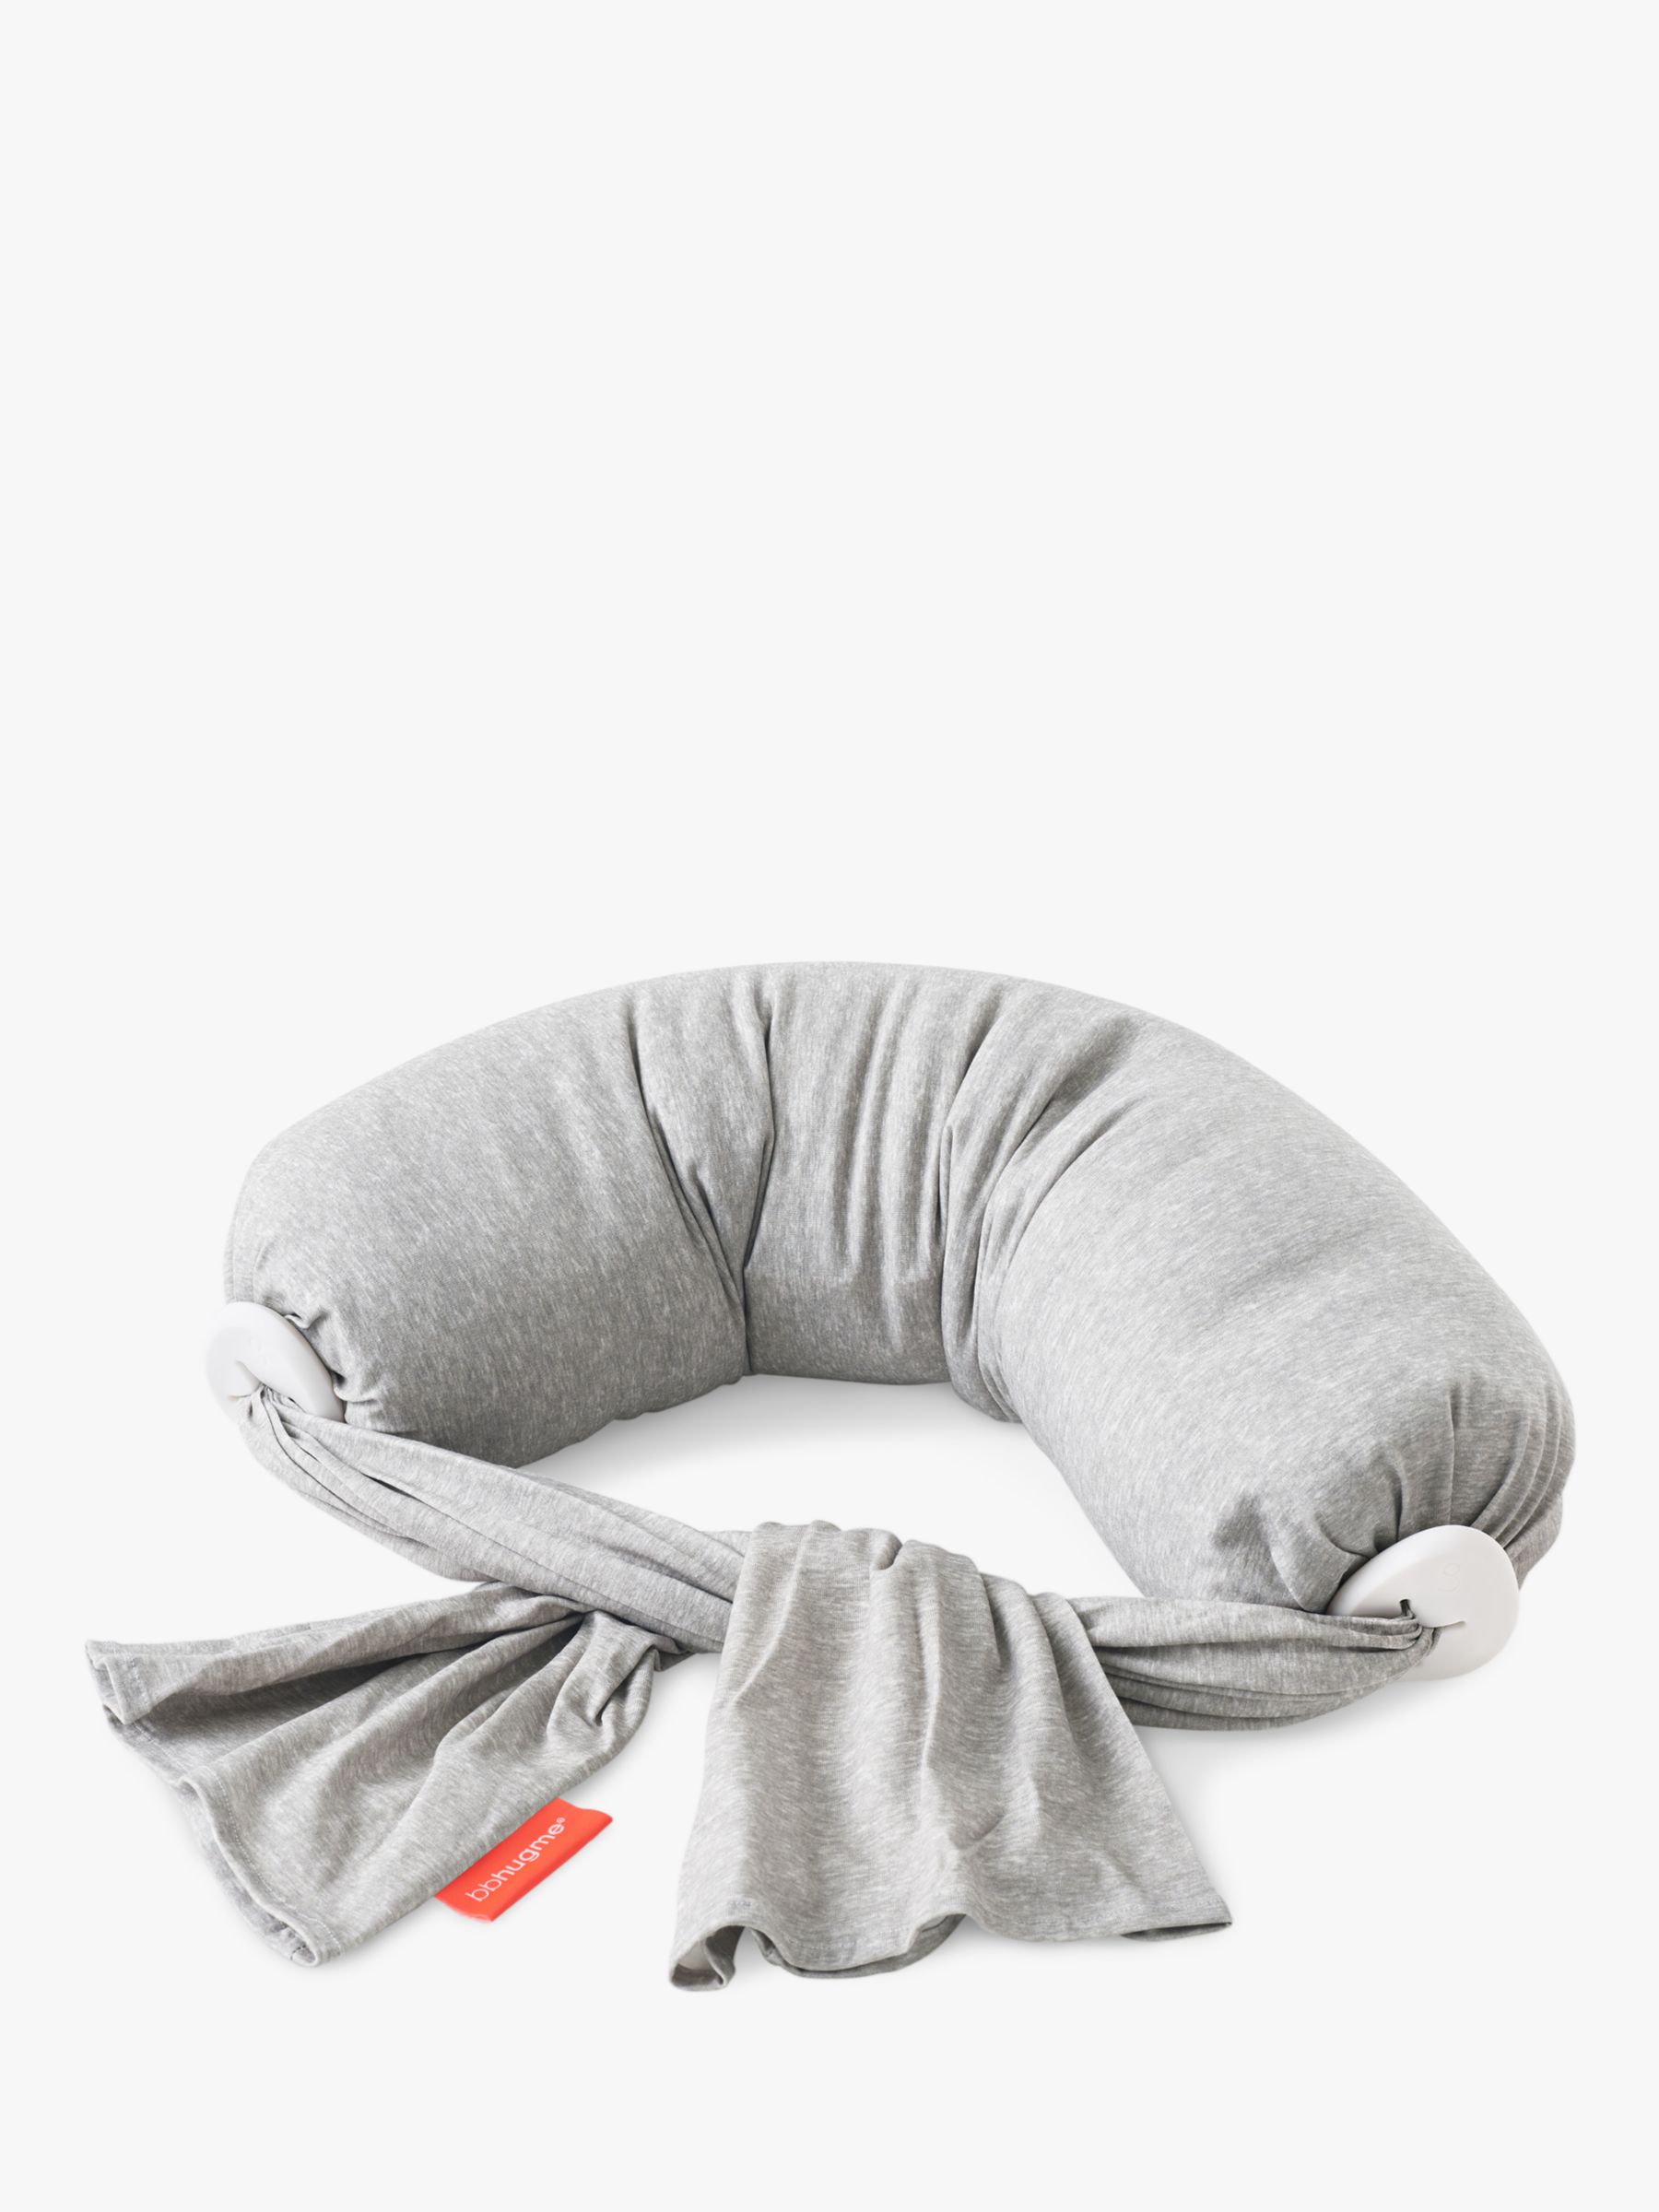 Image of bbhugme Nursing Pillow Grey